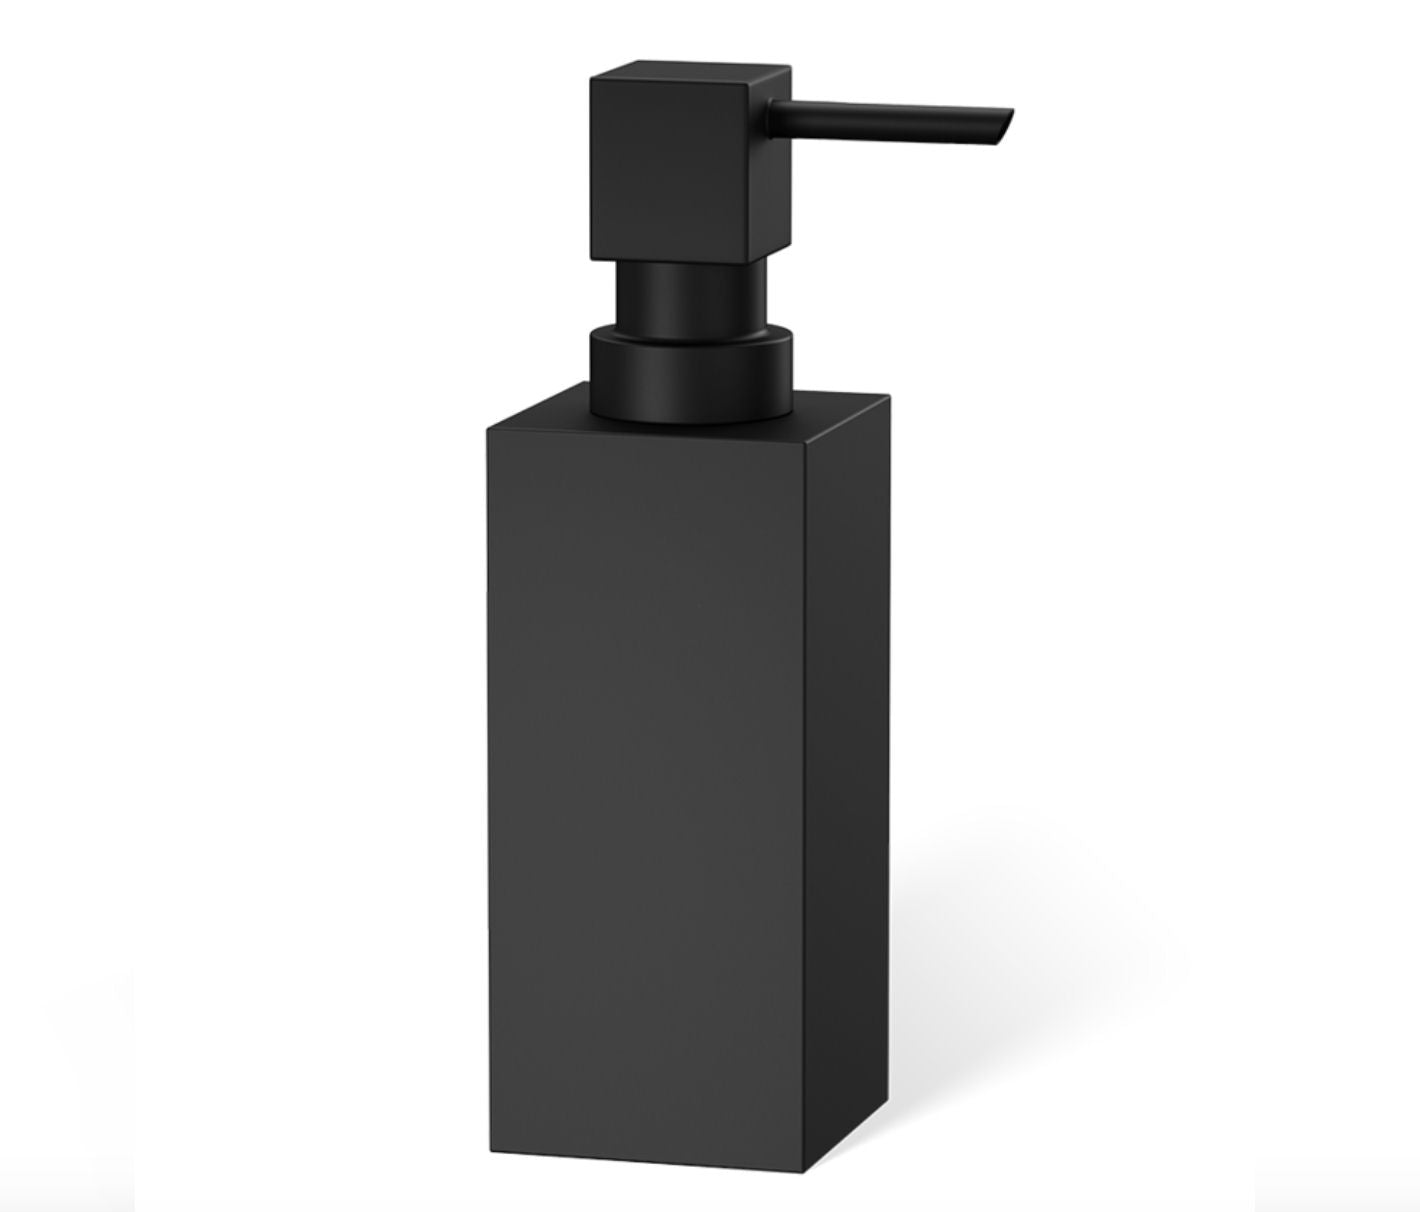 Matt Black Square Design Dispenser by Decor Walther - |VESIMI Design|